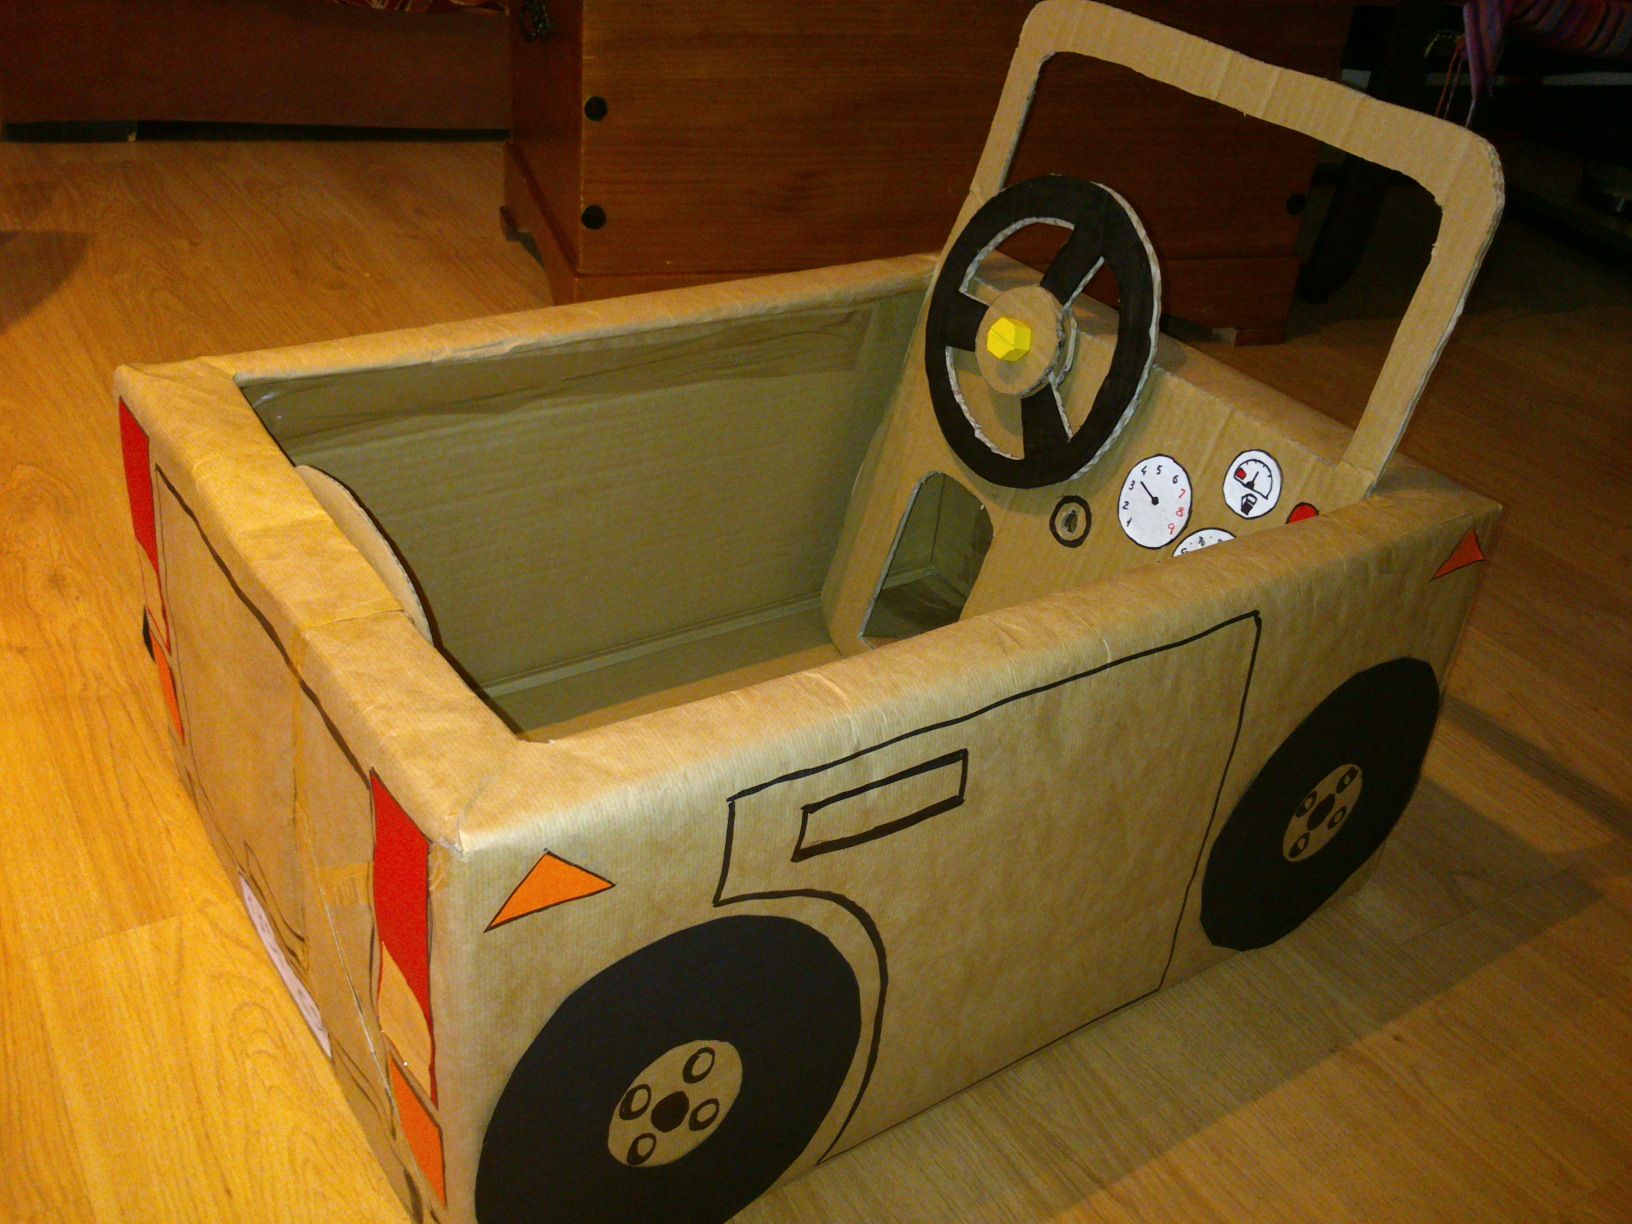 Машинка своими руками из коробки: Как из картонной коробки сделать детскую машинку? / Сделай сам / ПАПА СЕГОДНЯ